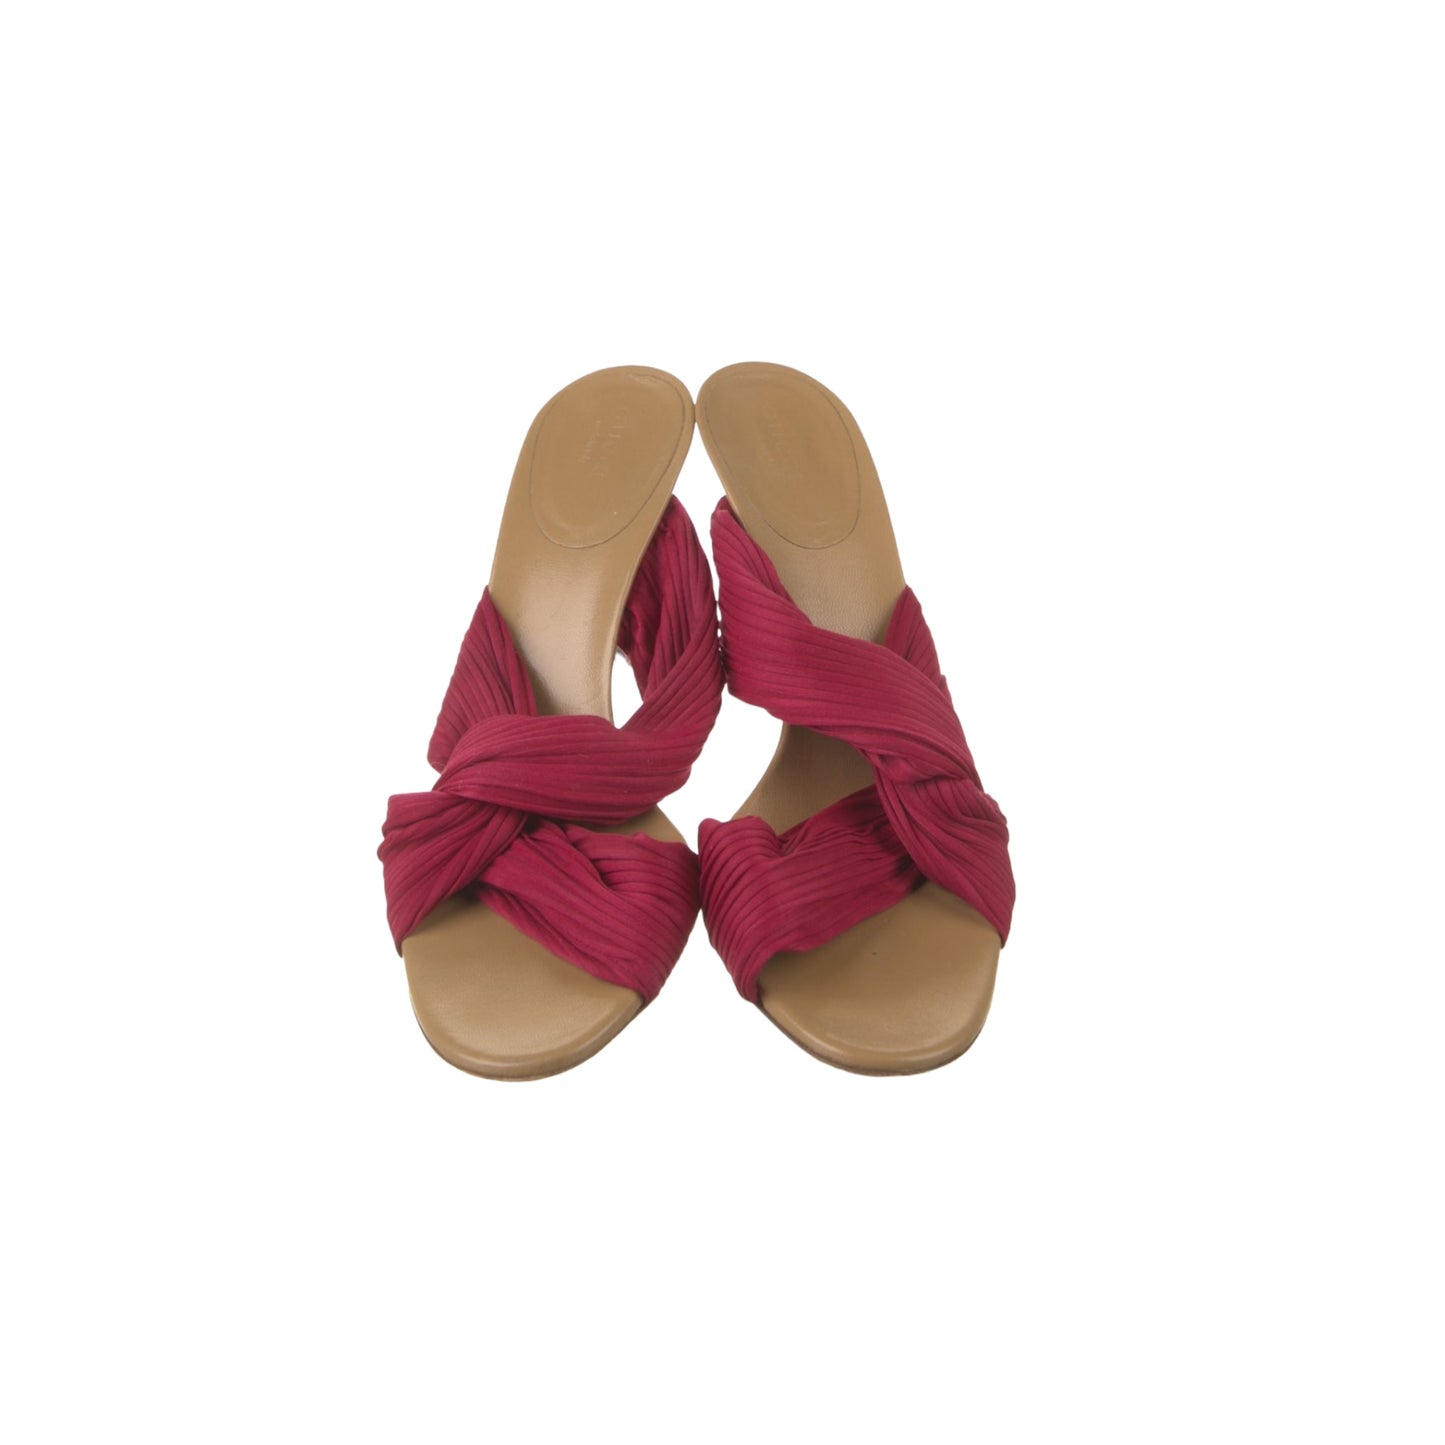 Vintage Gucci pink sandals / Us 8.5